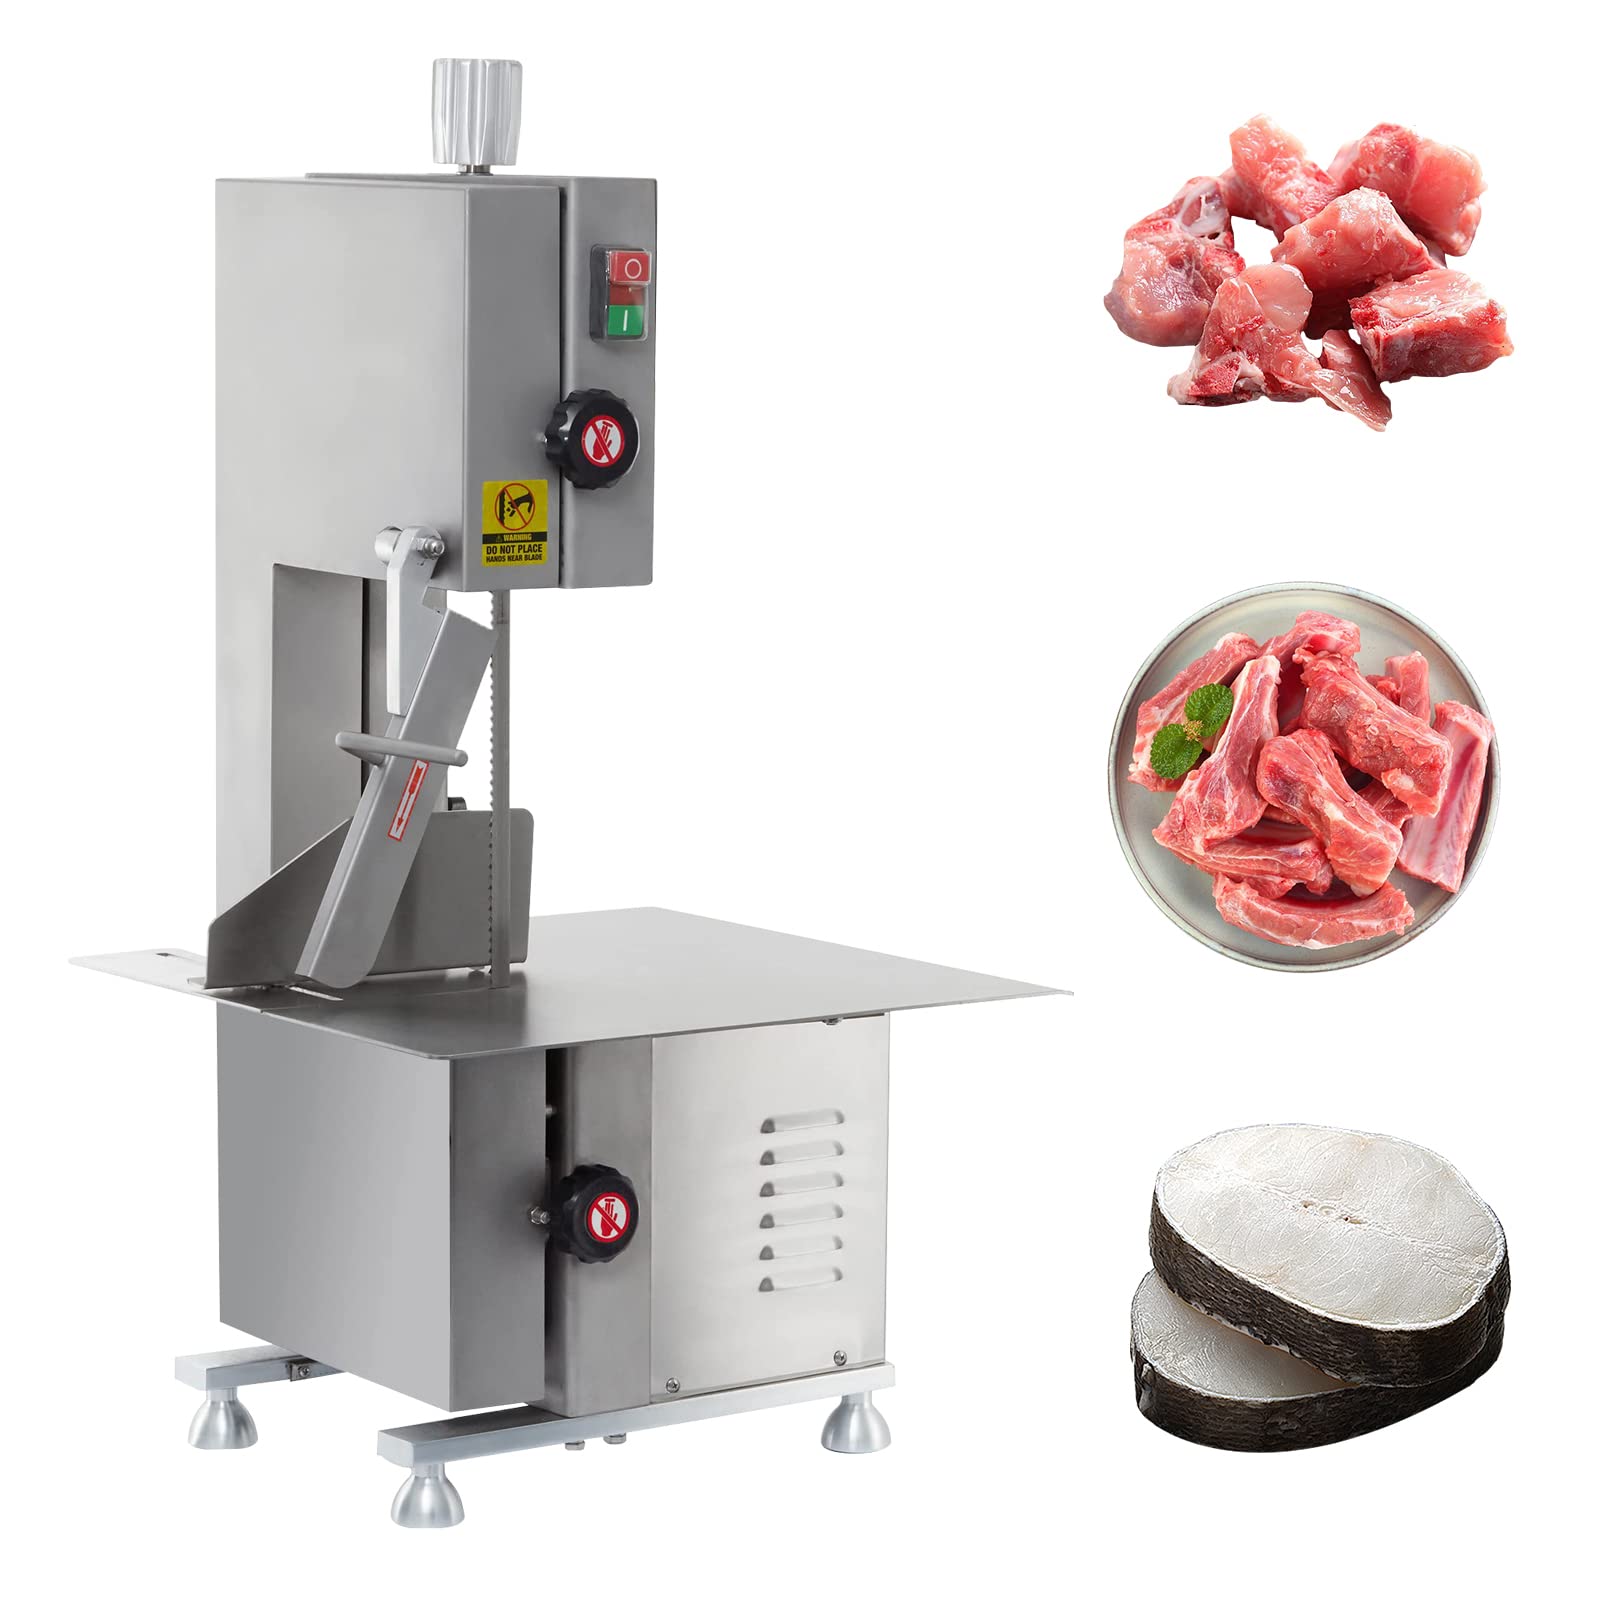 meat dicer machine, meat cutting machine